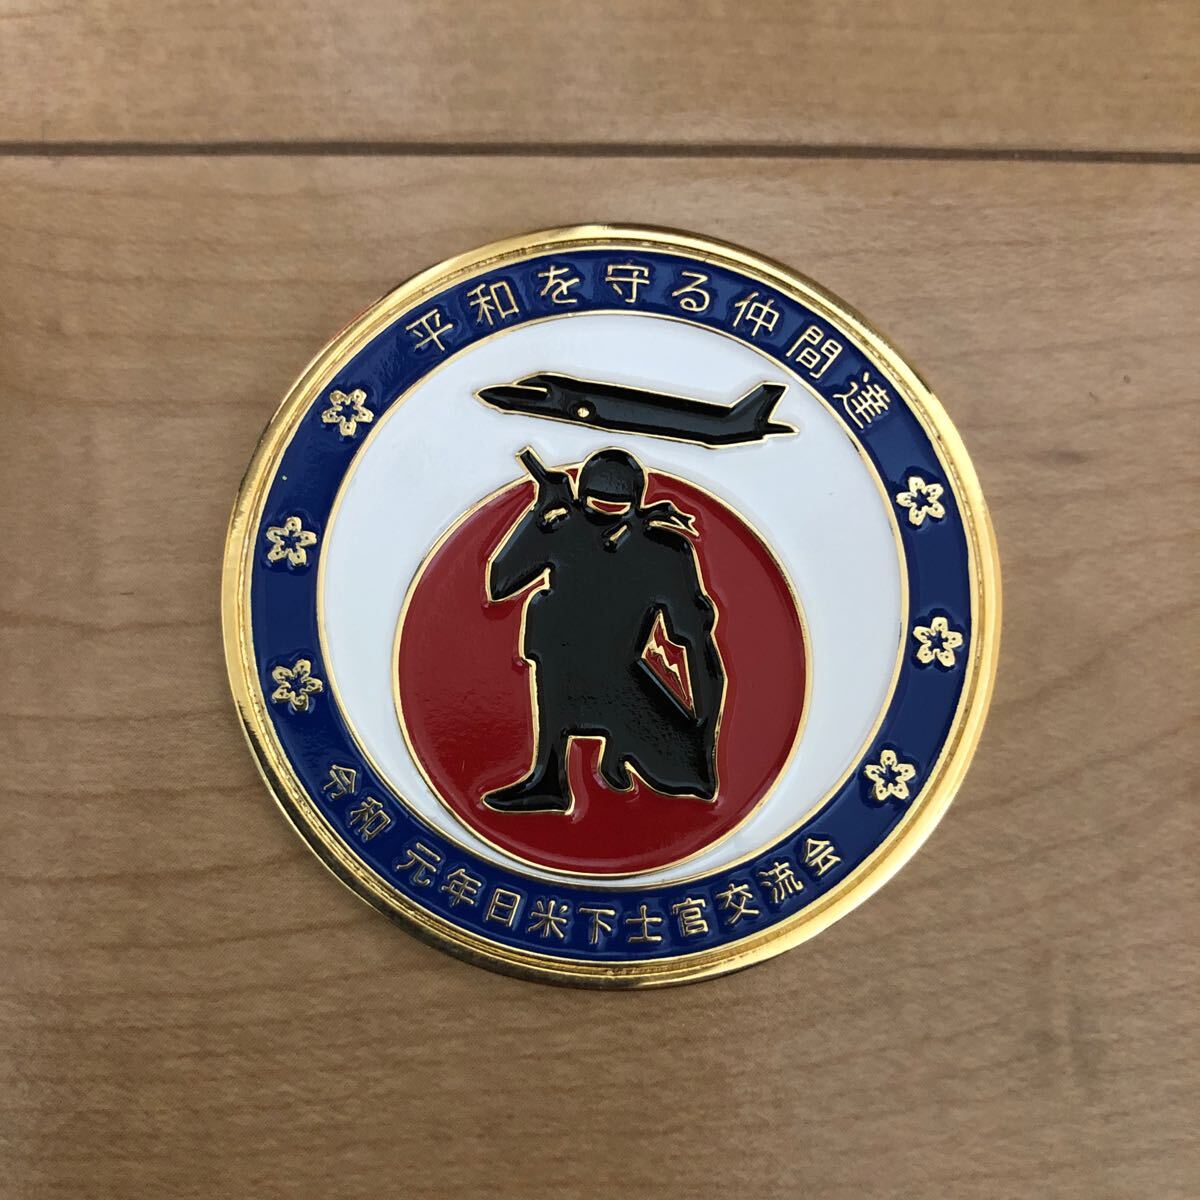 令和元年日米下士官交流会 記念メダル チャレンジコイン 2019の画像1